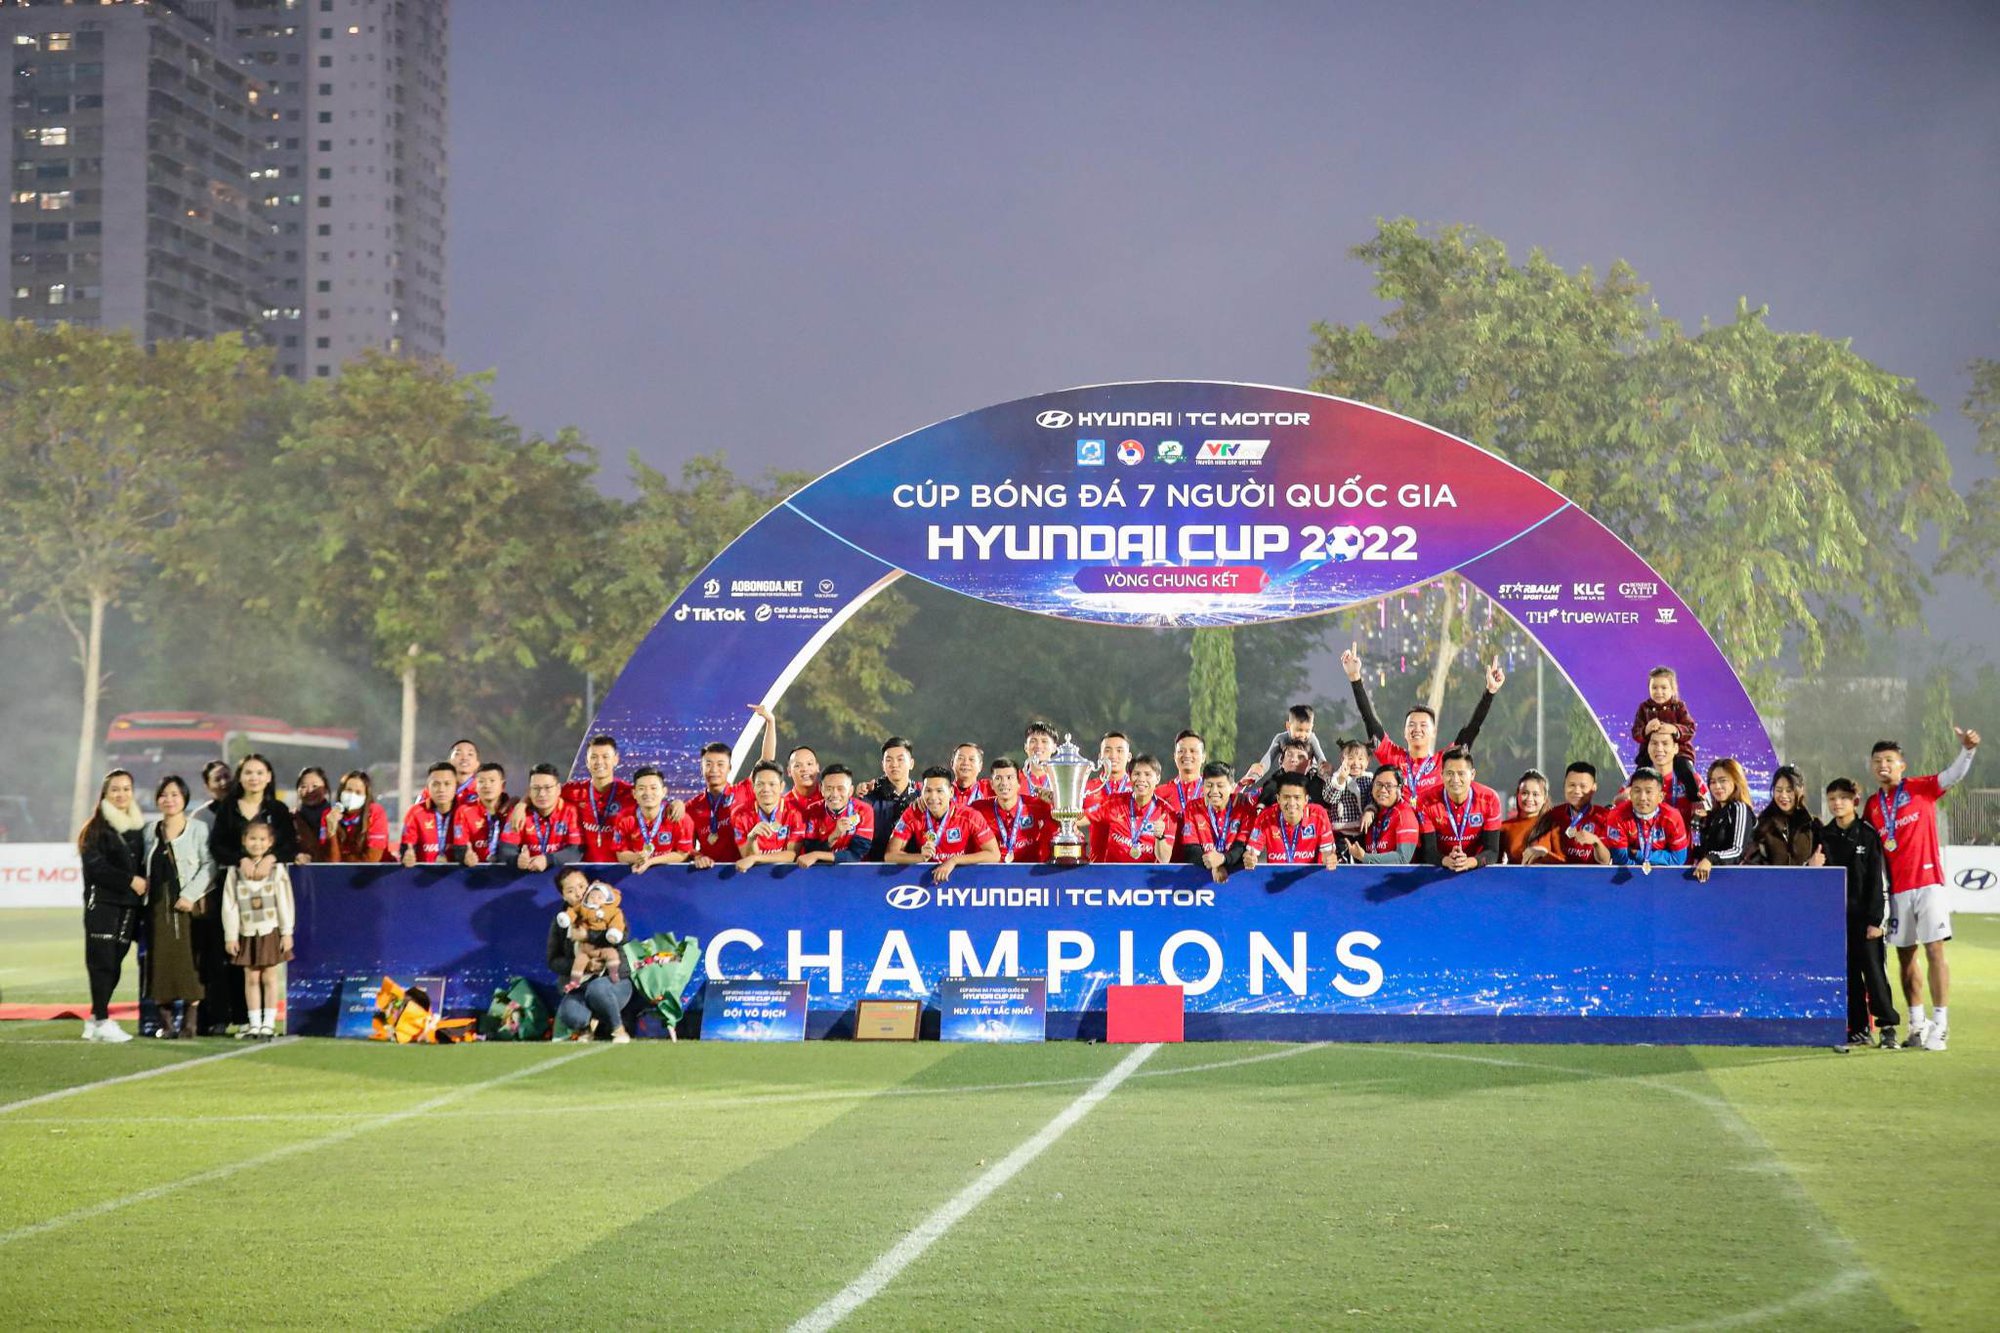 Mobi lên ngôi vô địch Cúp bóng đá 7 người quốc gia Hyundai Cup 2022  - Ảnh 3.